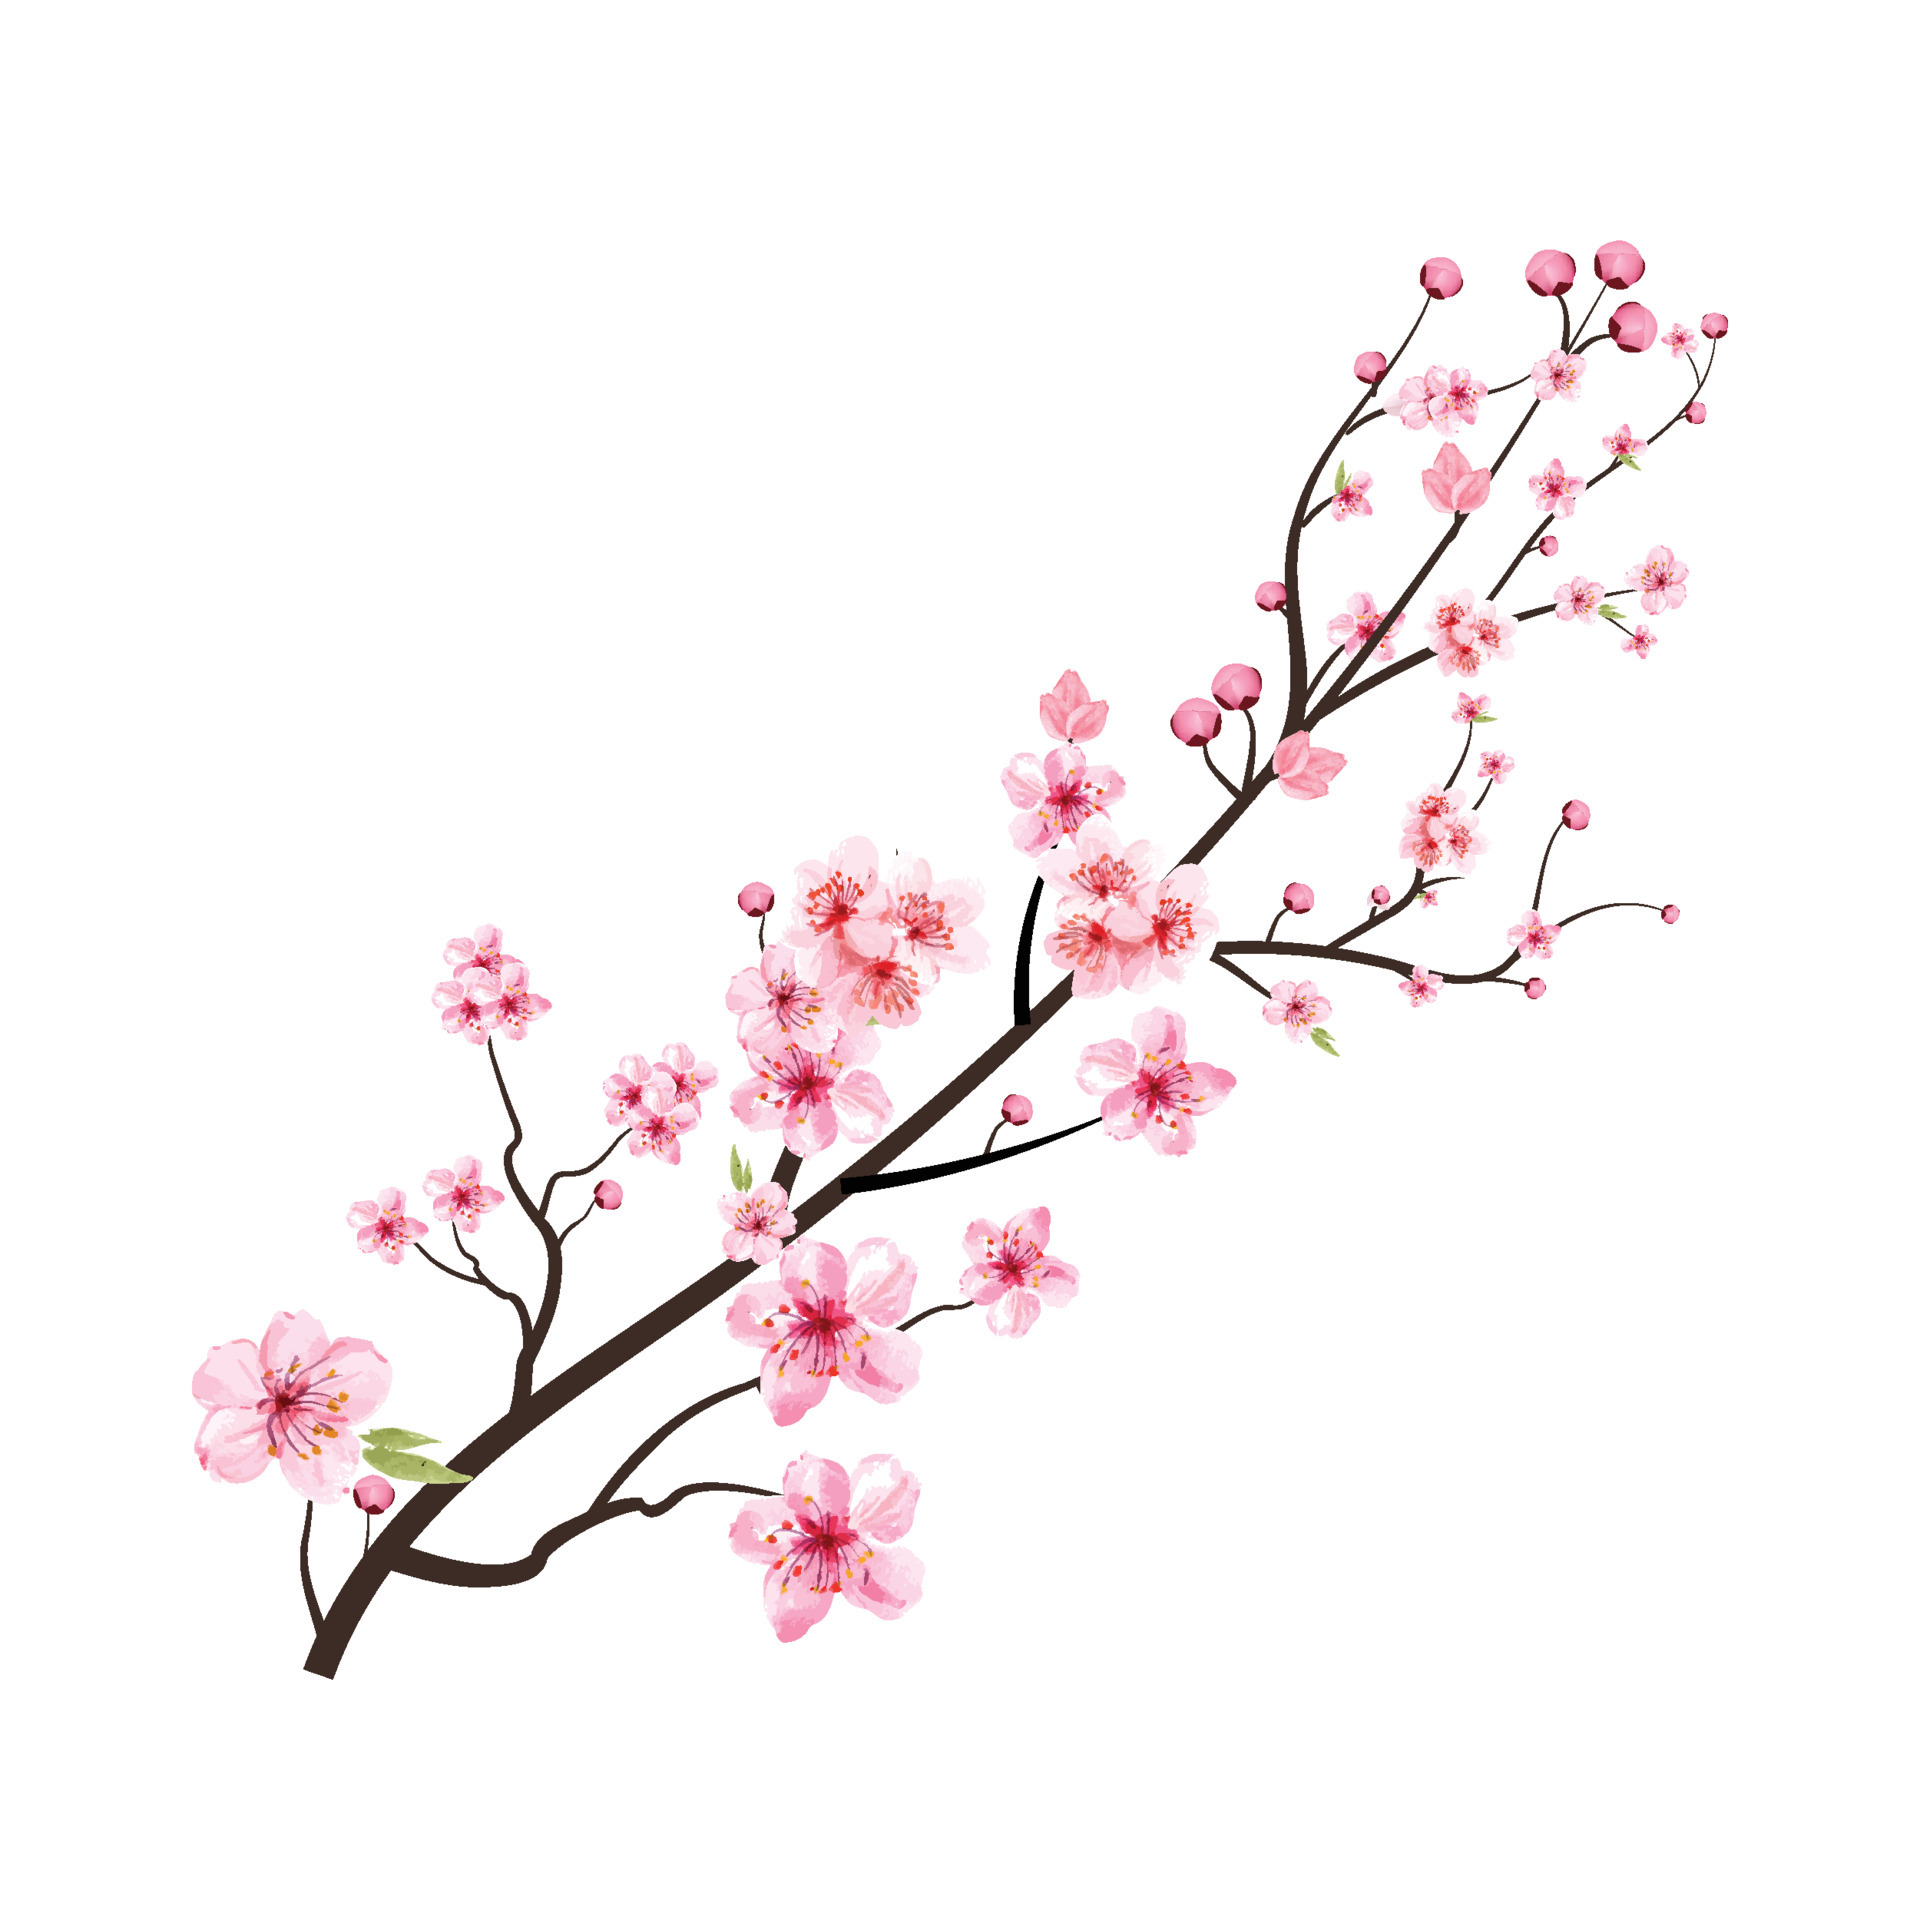 fiore di ciliegio con fiore di sakura acquerello che sboccia